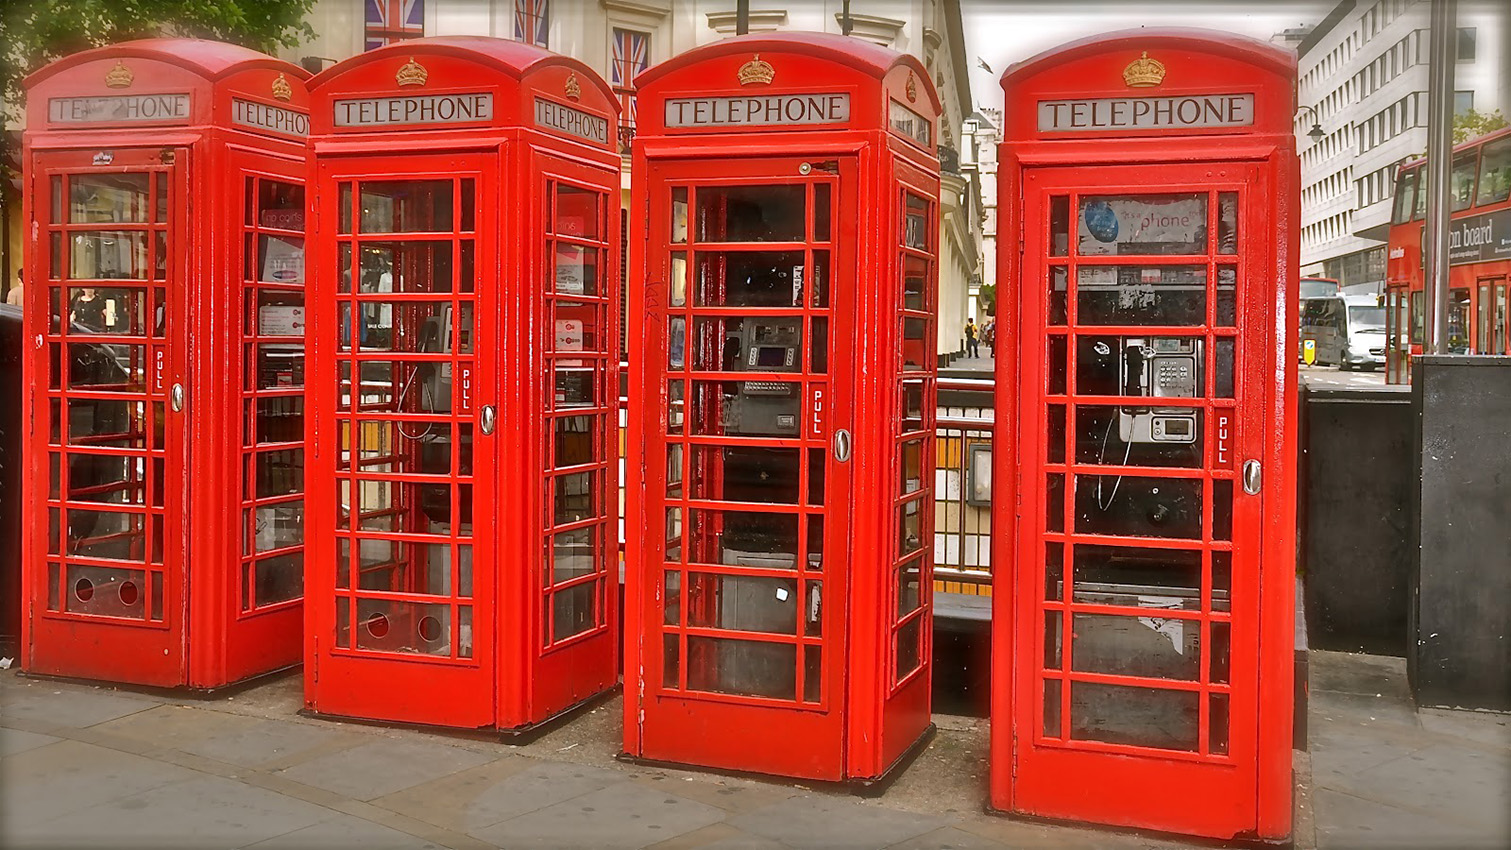 La nueva vida de las famosas cabinas telefónicas rojas británicas